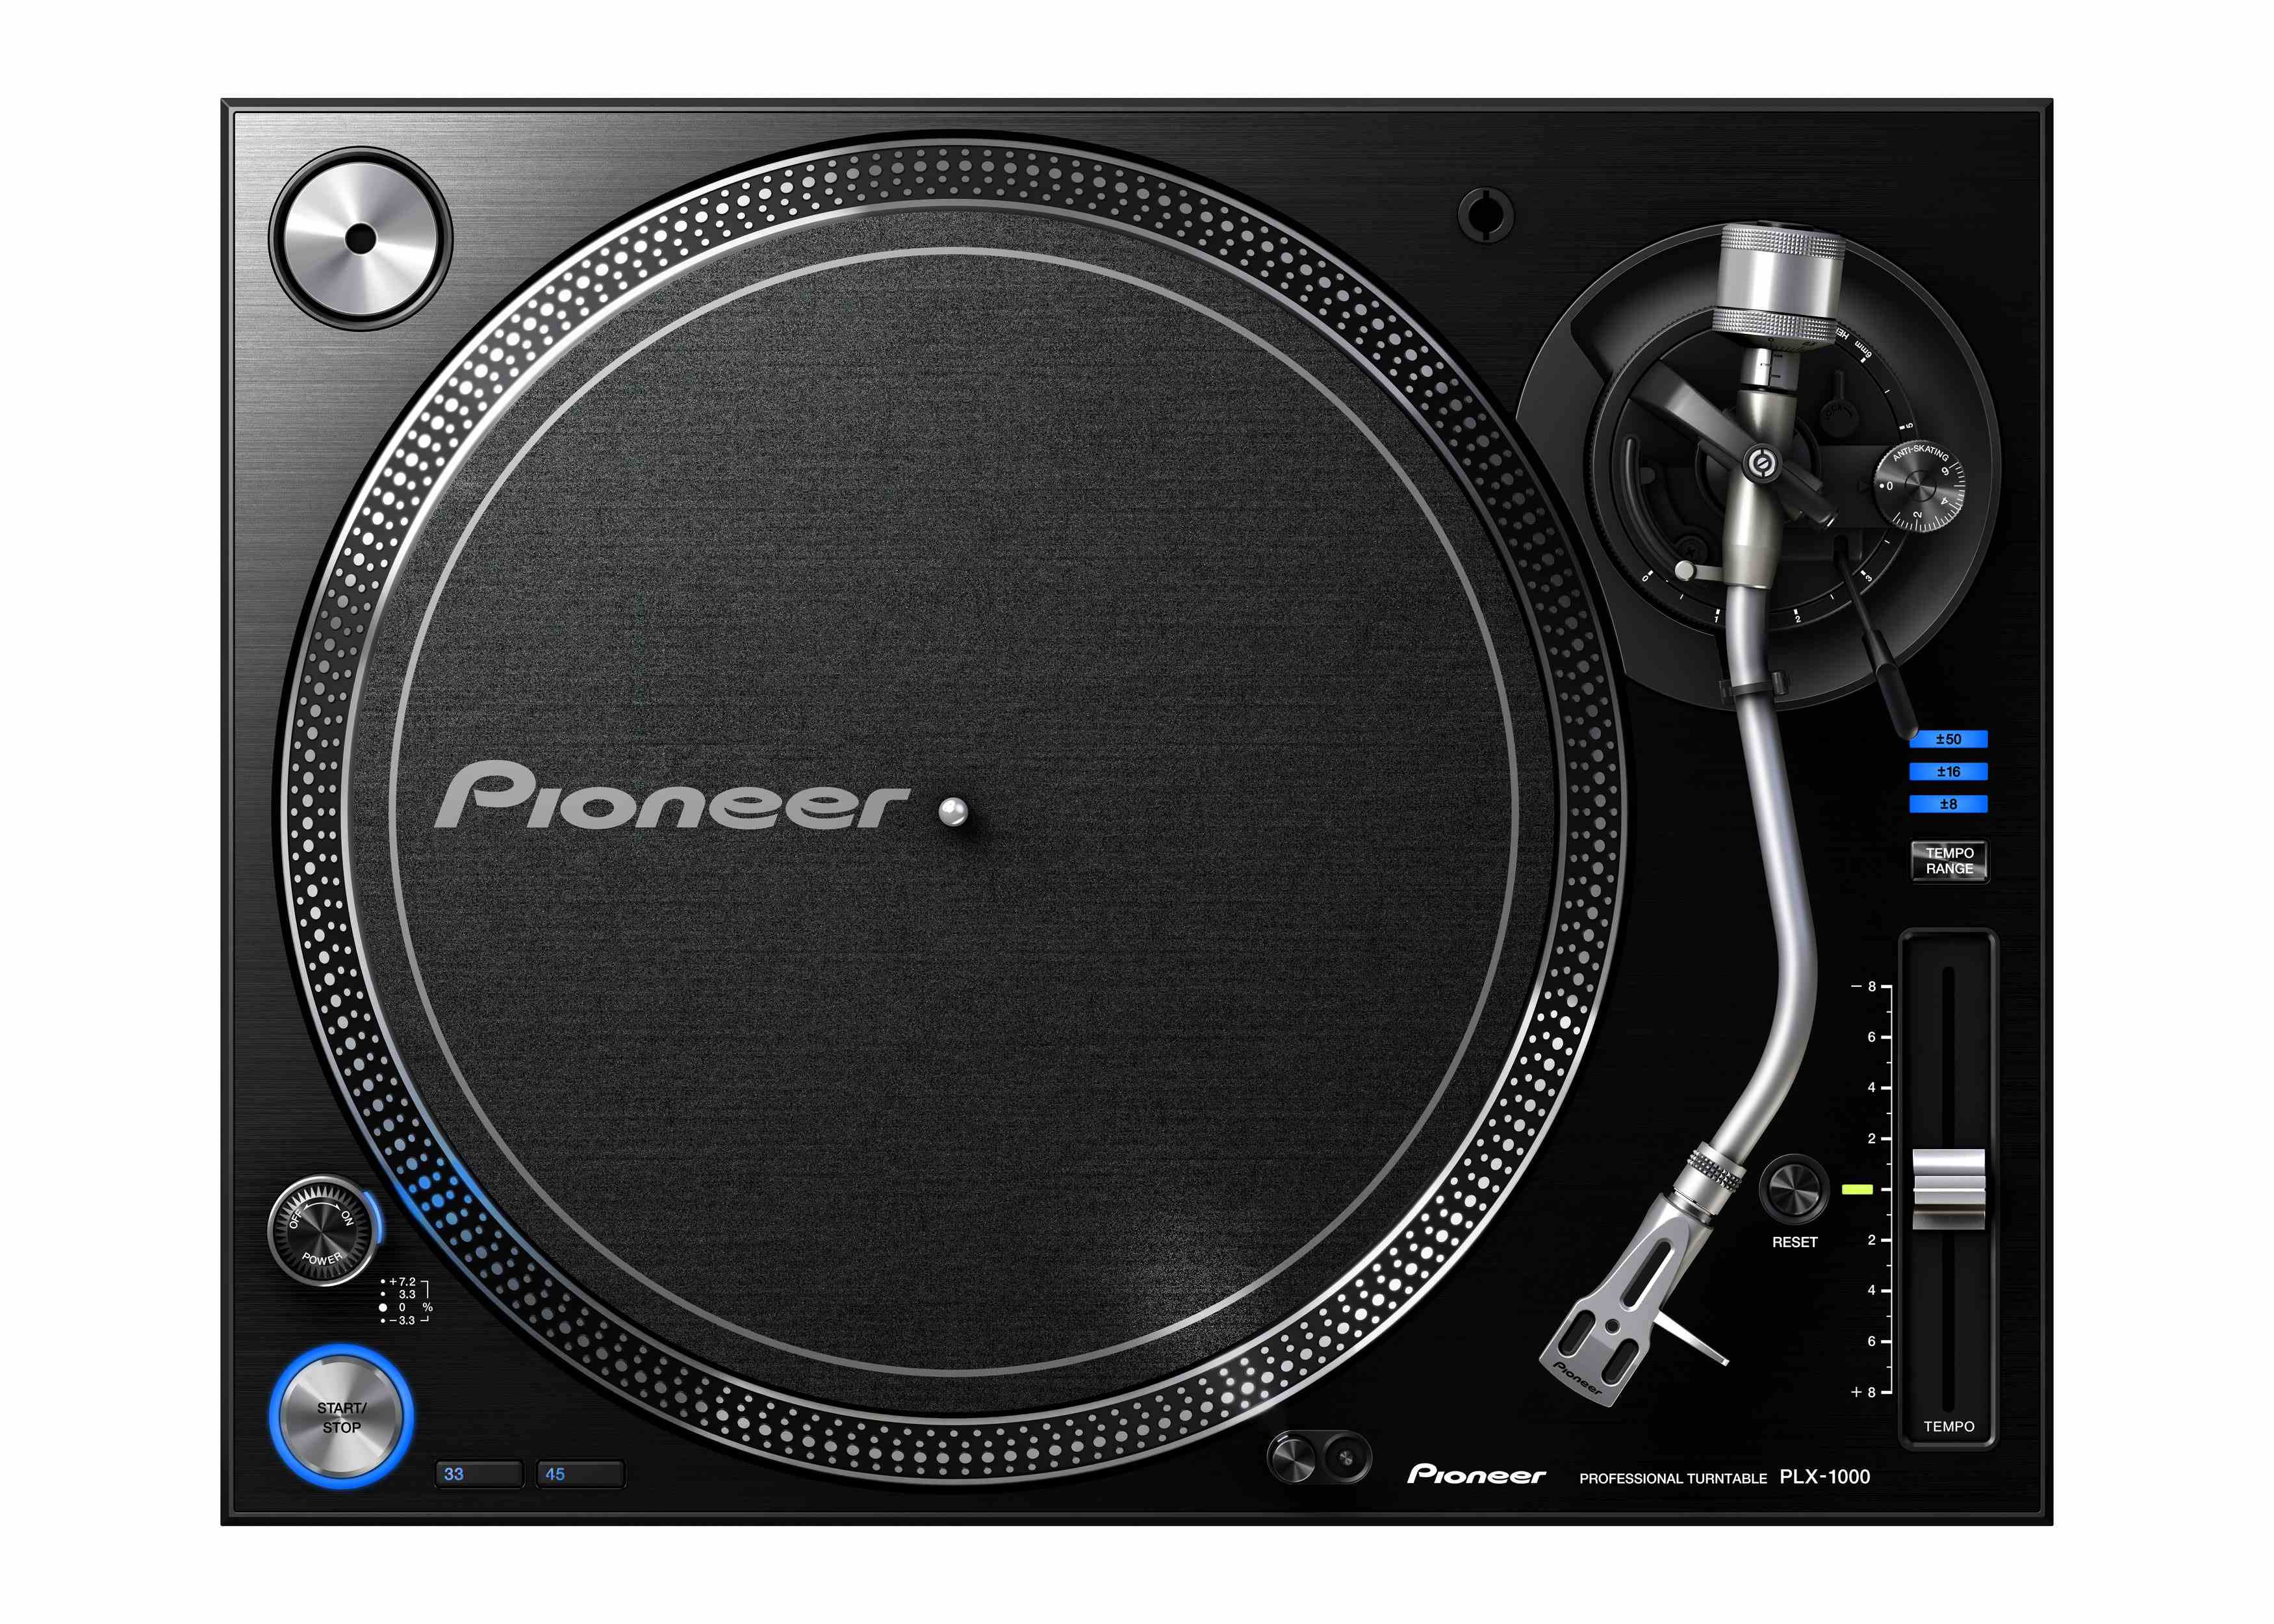 Pioneer PLX-1000 Turntable